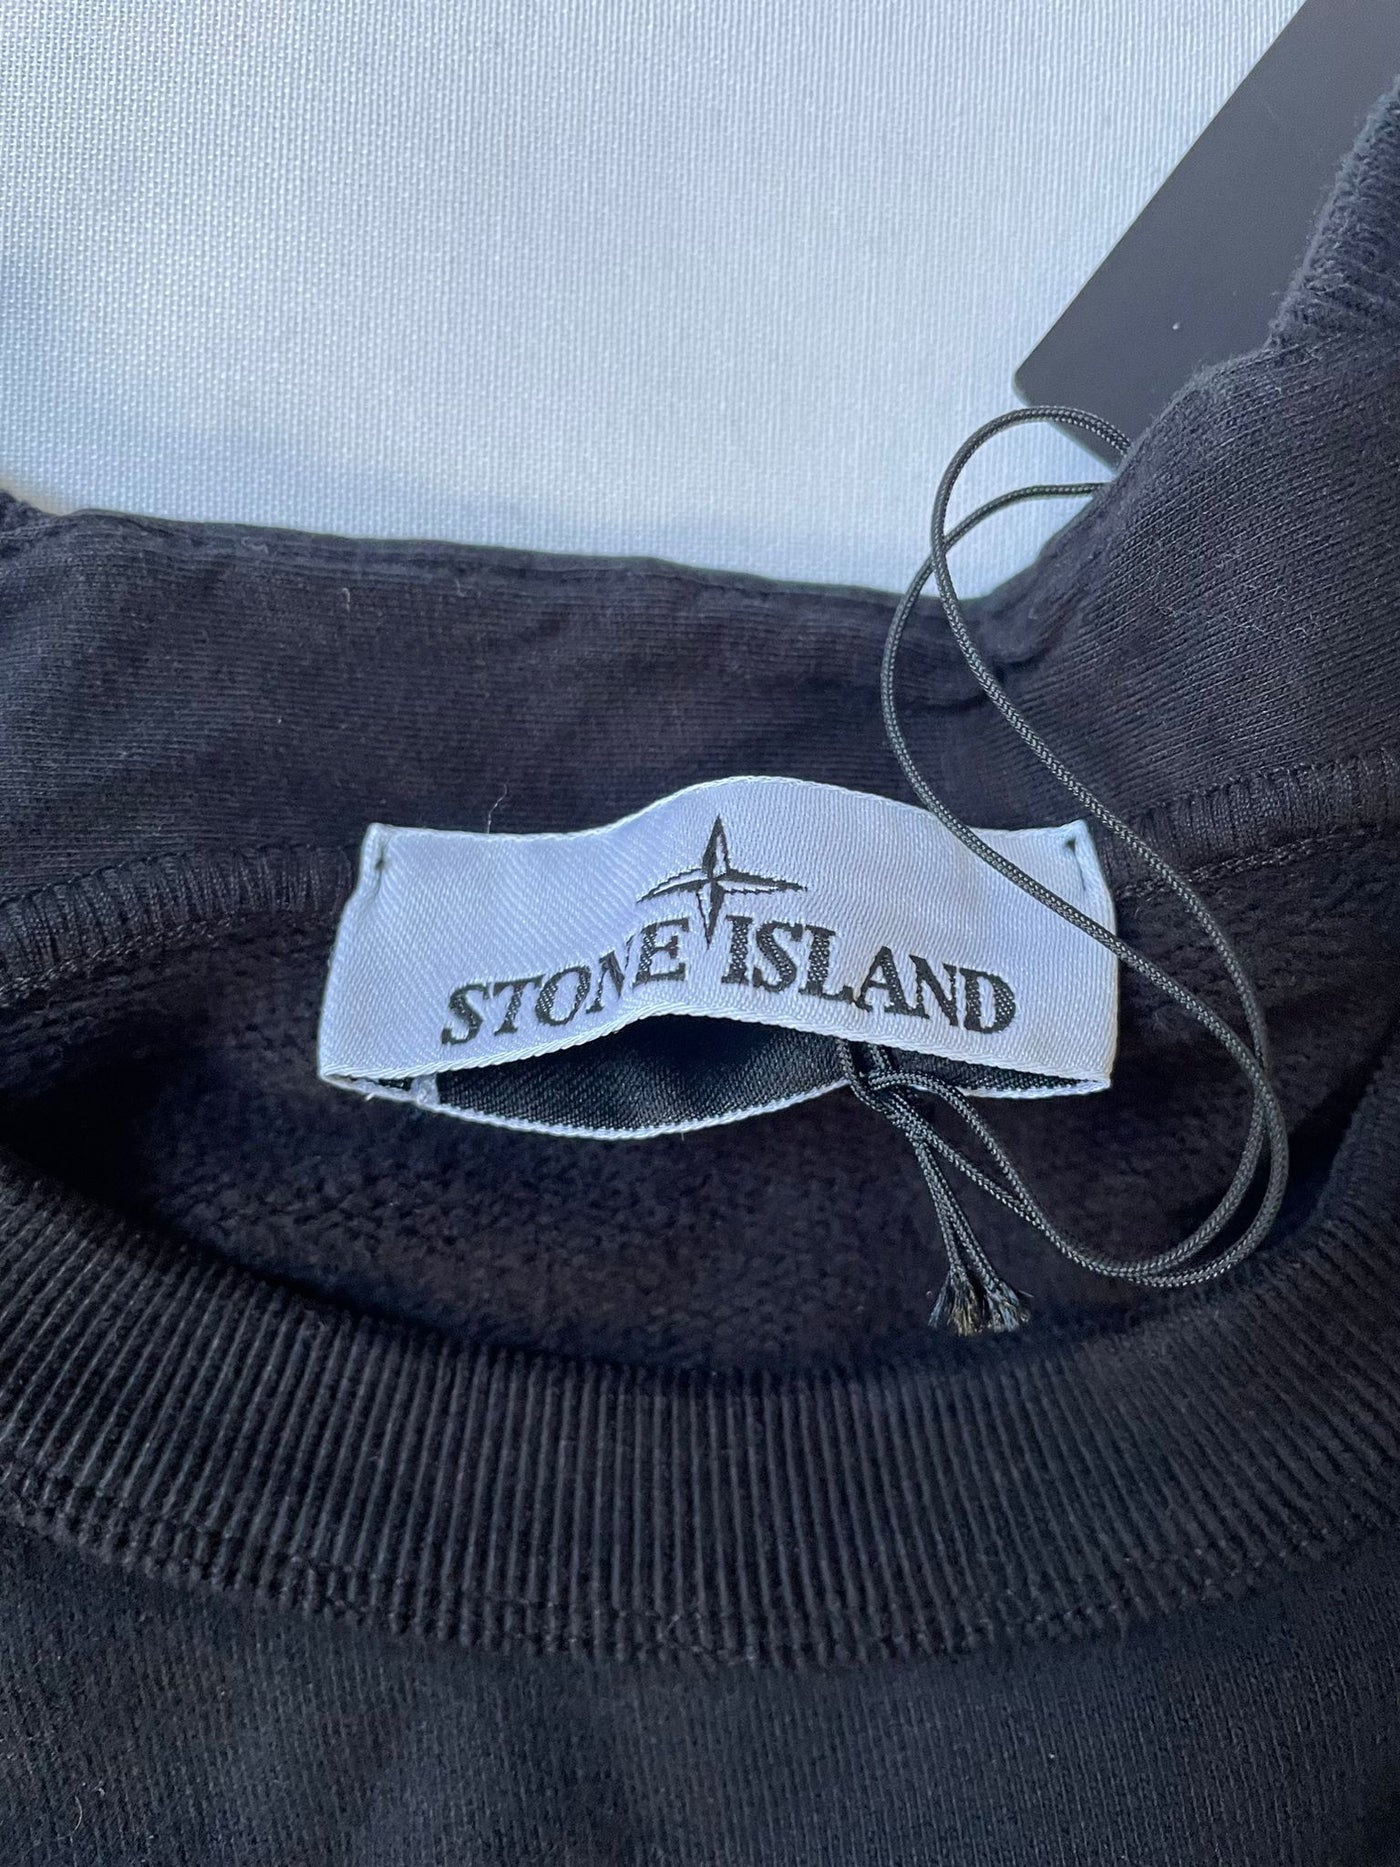 Stone Island Sweater Black New (XXL)